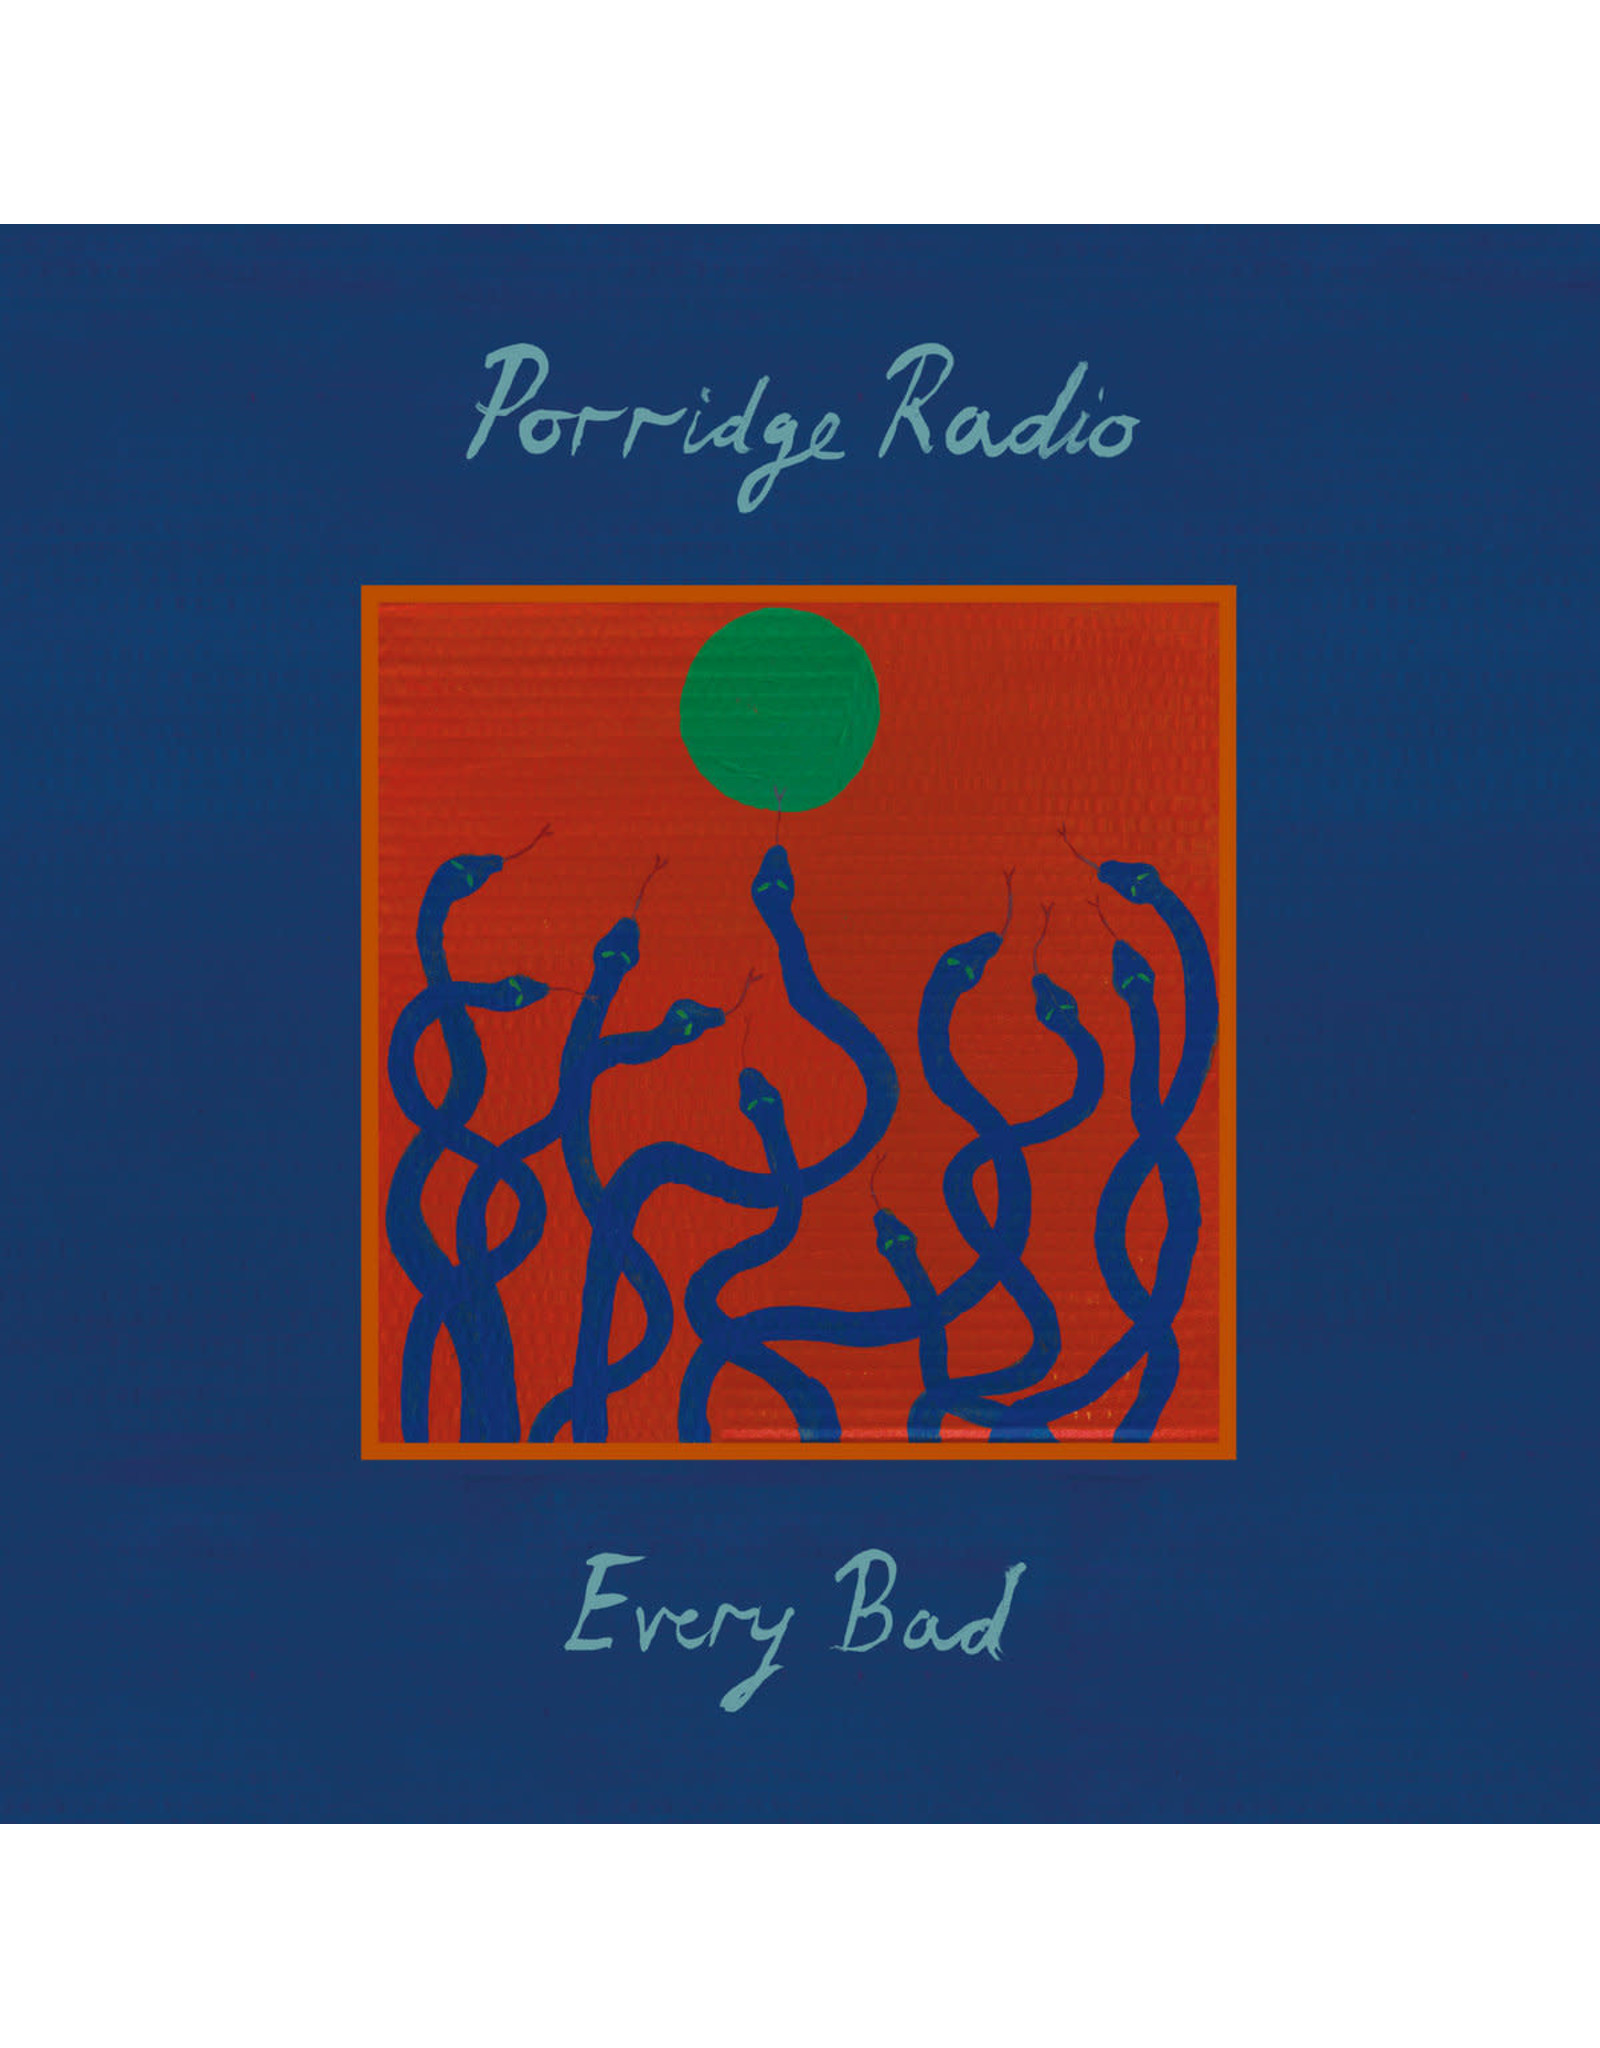 Porridge Radio - Every Bad (Exclusive Blue Vinyl)